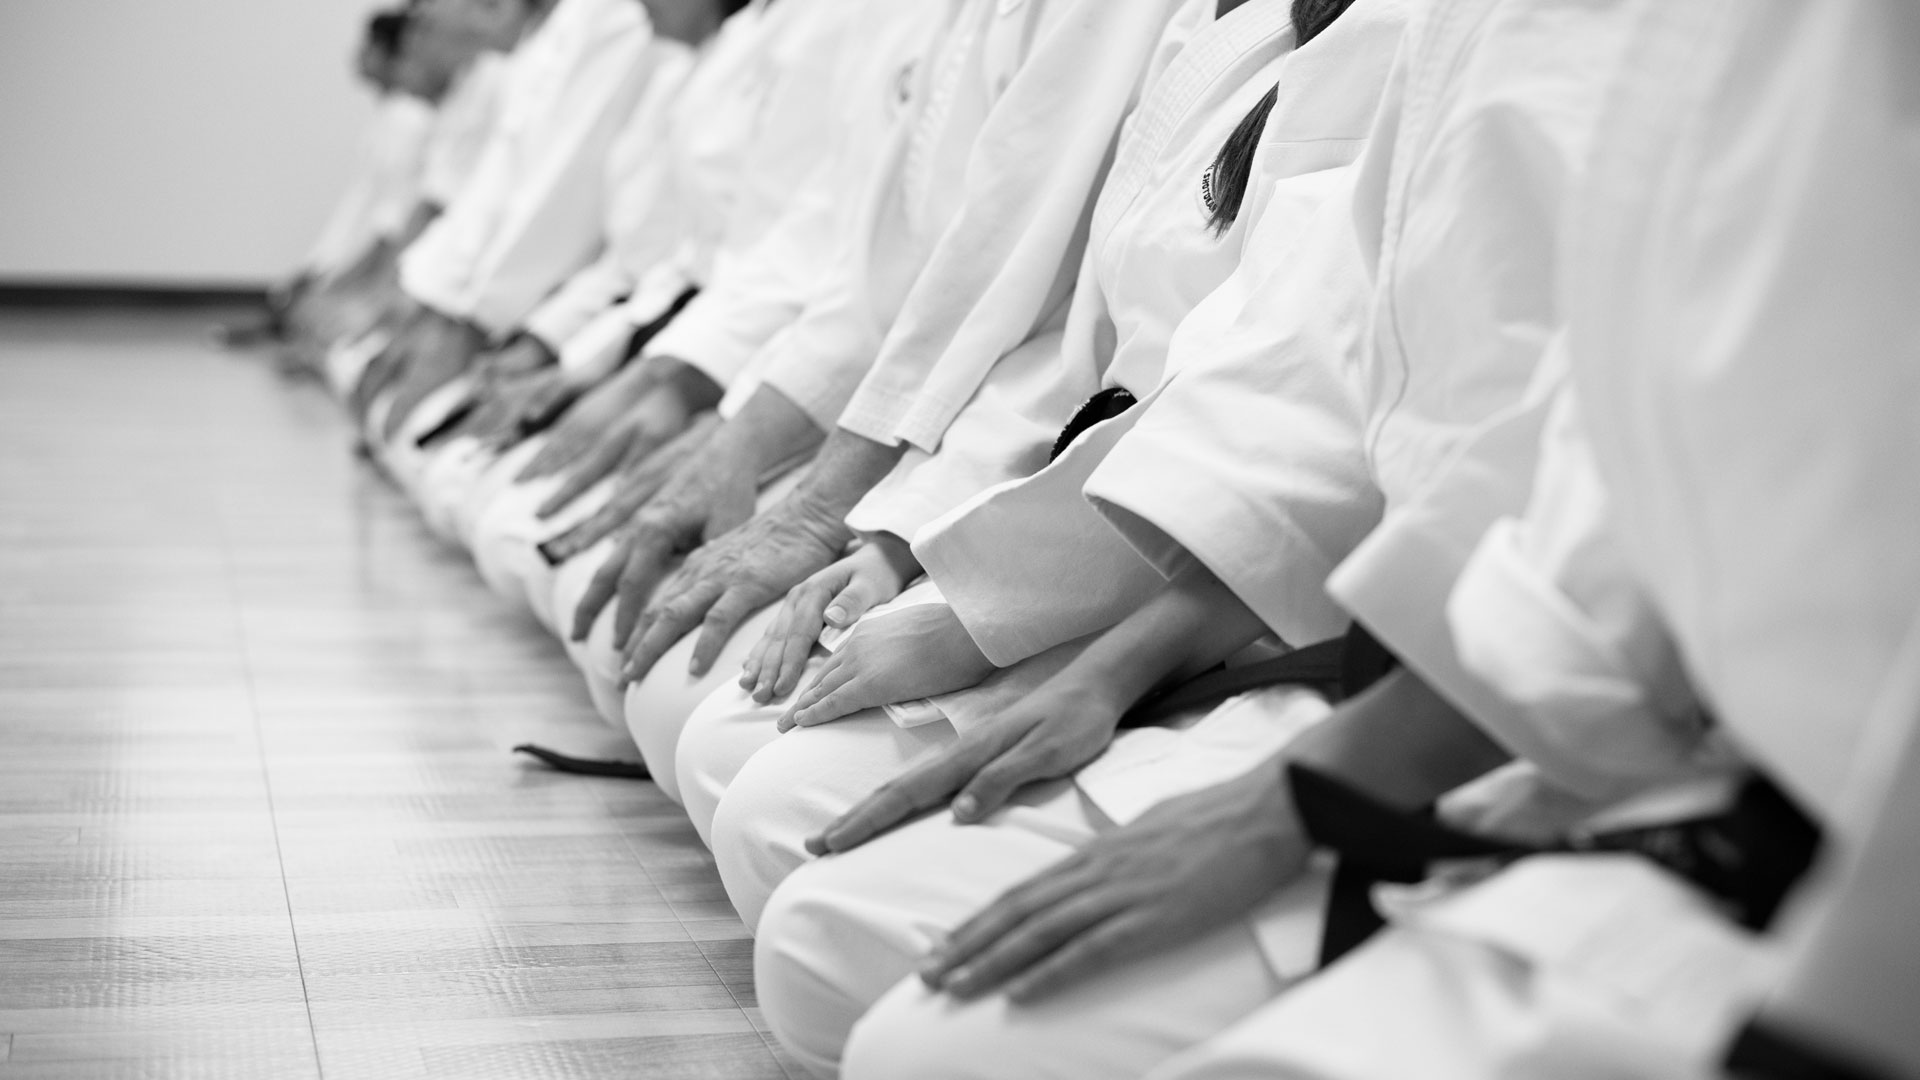 Shotokan Karate Club Calgary Nw